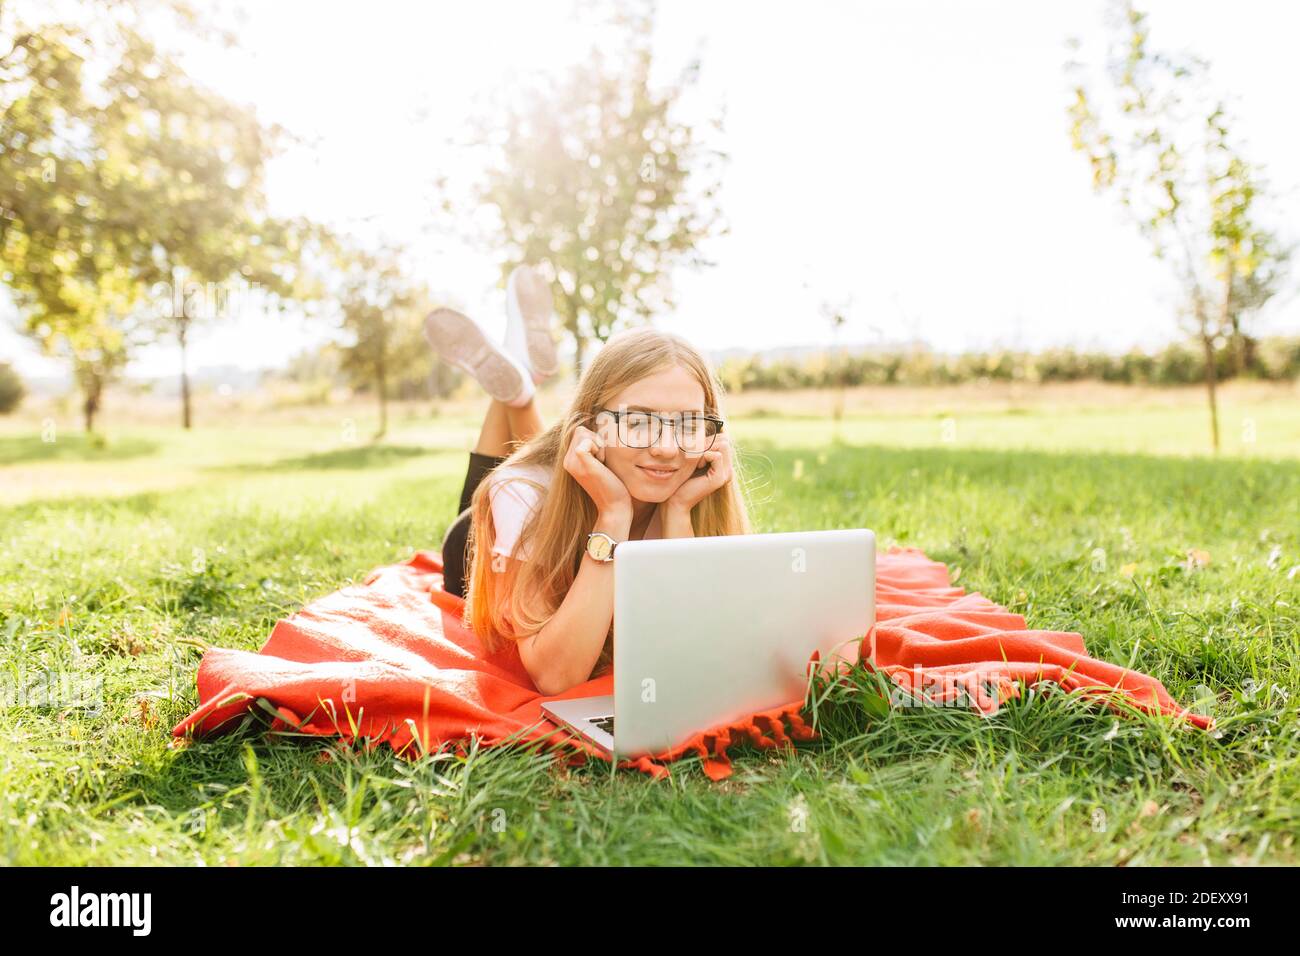 Image d'une belle jeune fille étudiante avec des lunettes qui travaille sur un ordinateur portable de bonne humeur dans le parc, allongé sur une couverture Banque D'Images